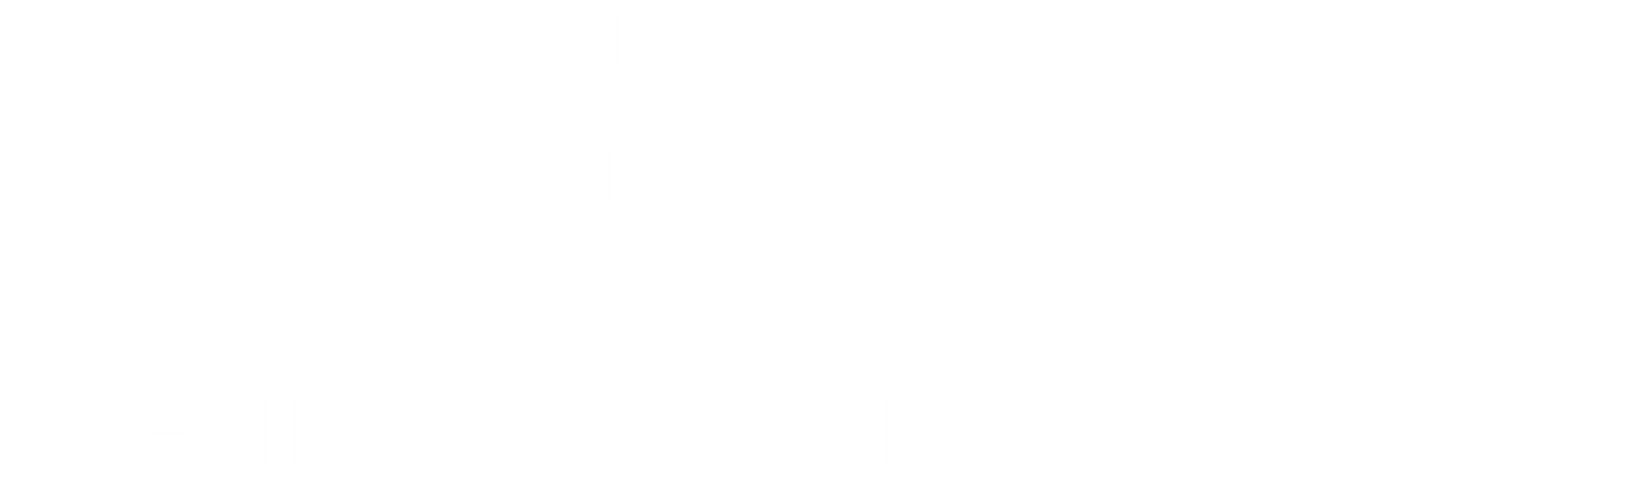 logo BFN